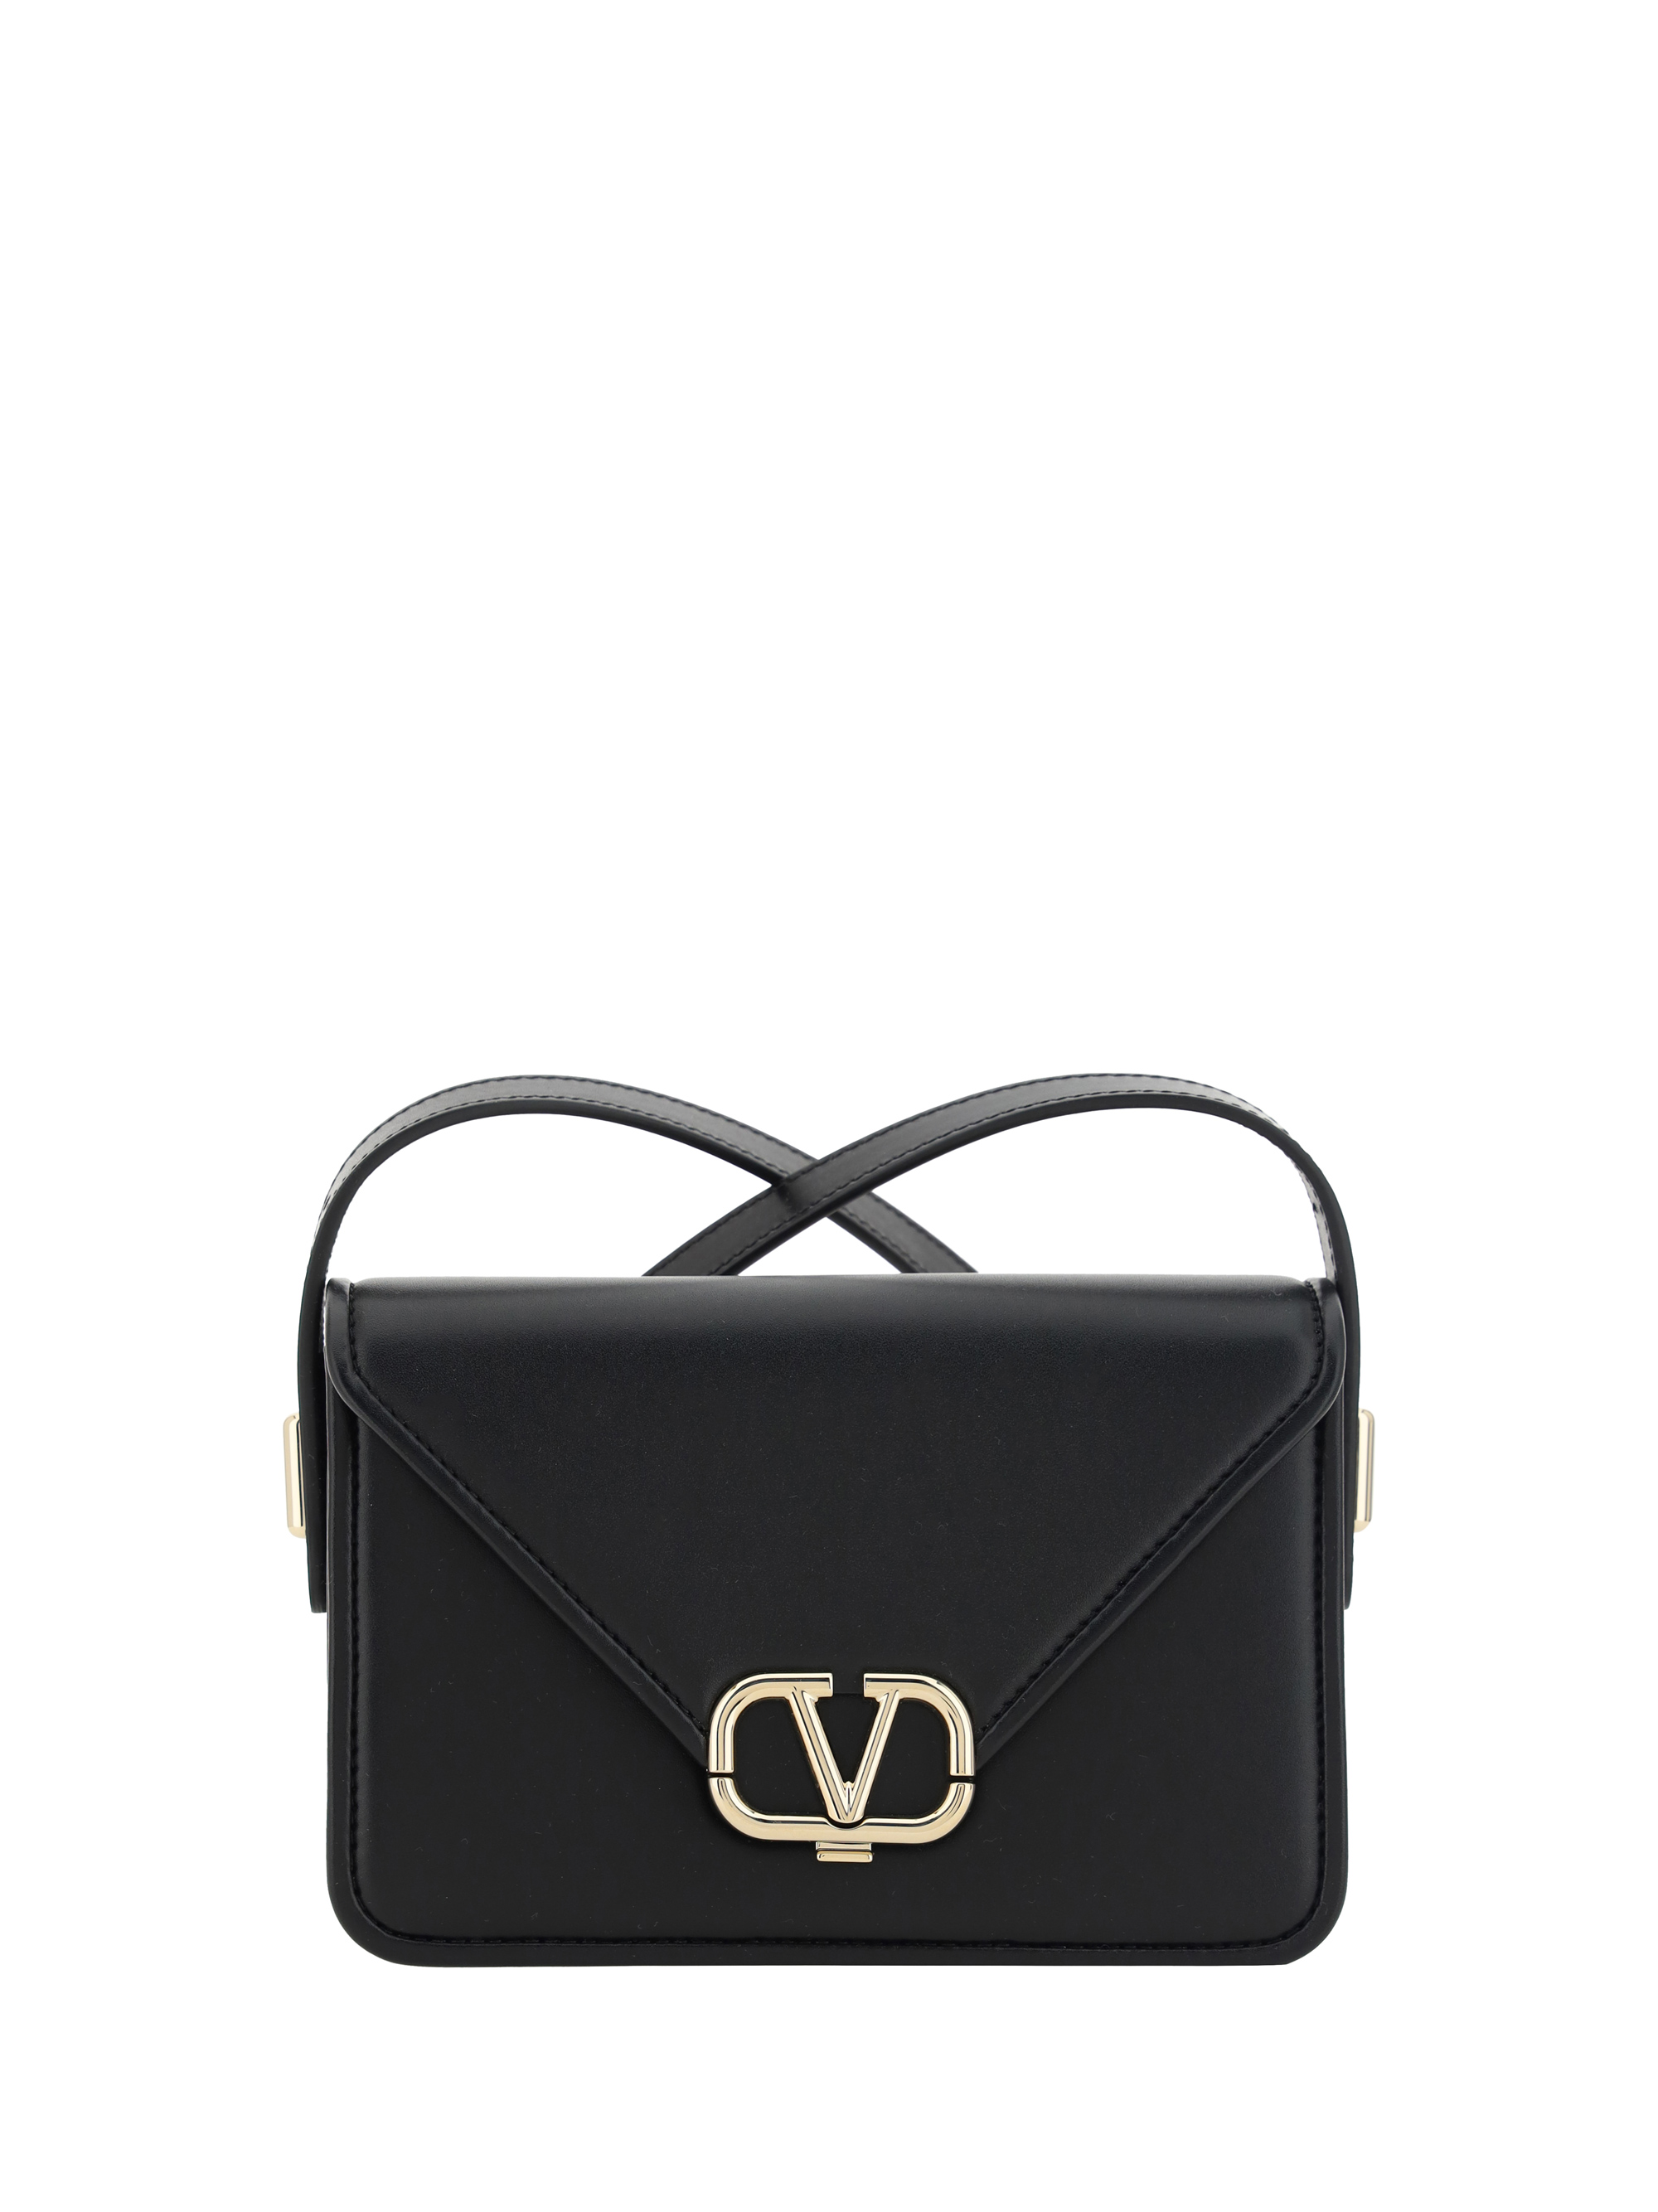 Valentino Garavani - V-logo Mini Leather Shoulder Bag - Womens - Black